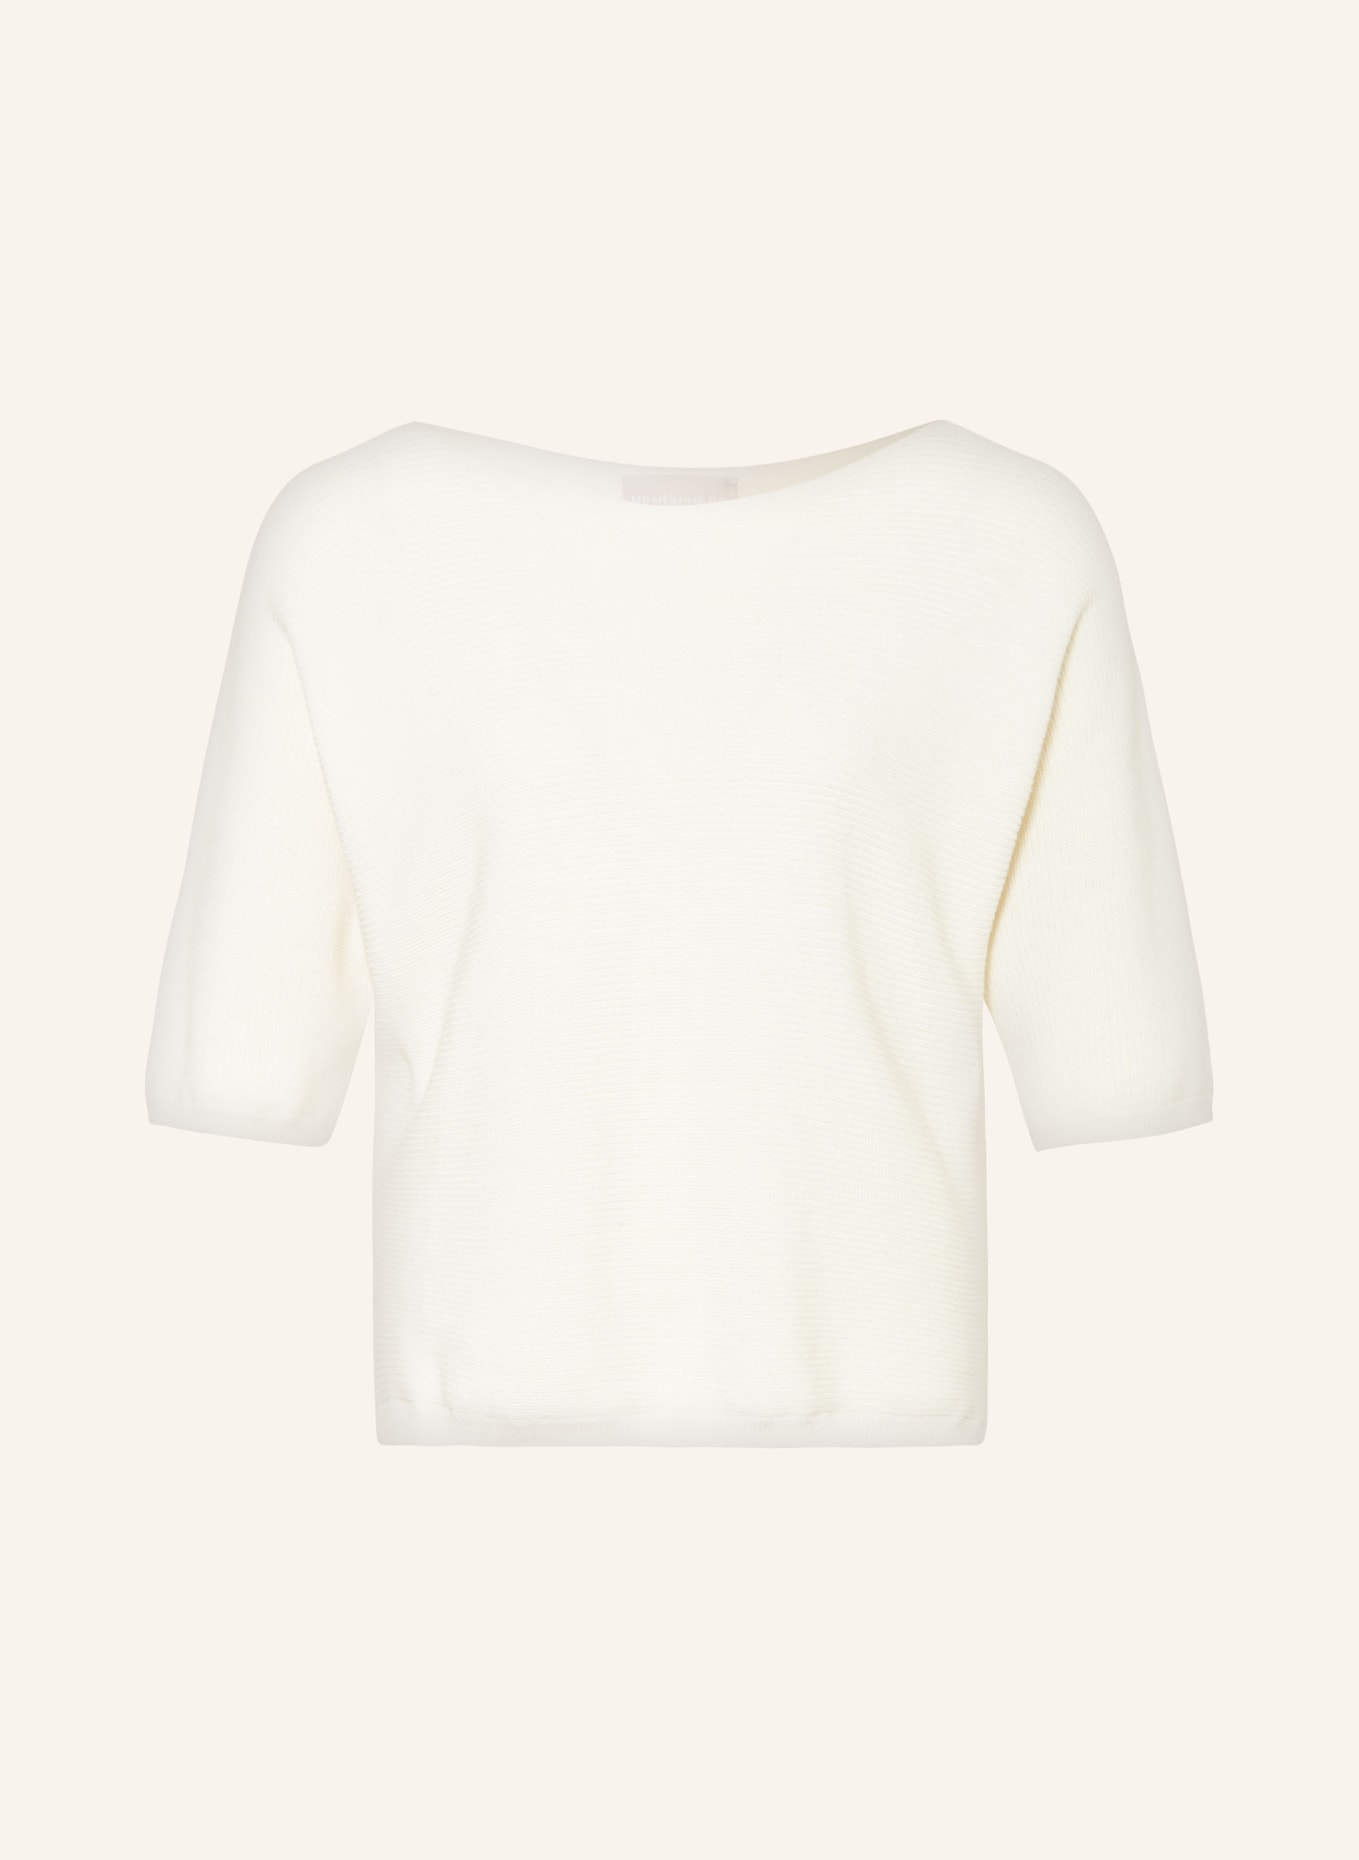 HEMISPHERE Pullover mit 3/4-Arm, Farbe: 1001 white weiss (Bild 1)